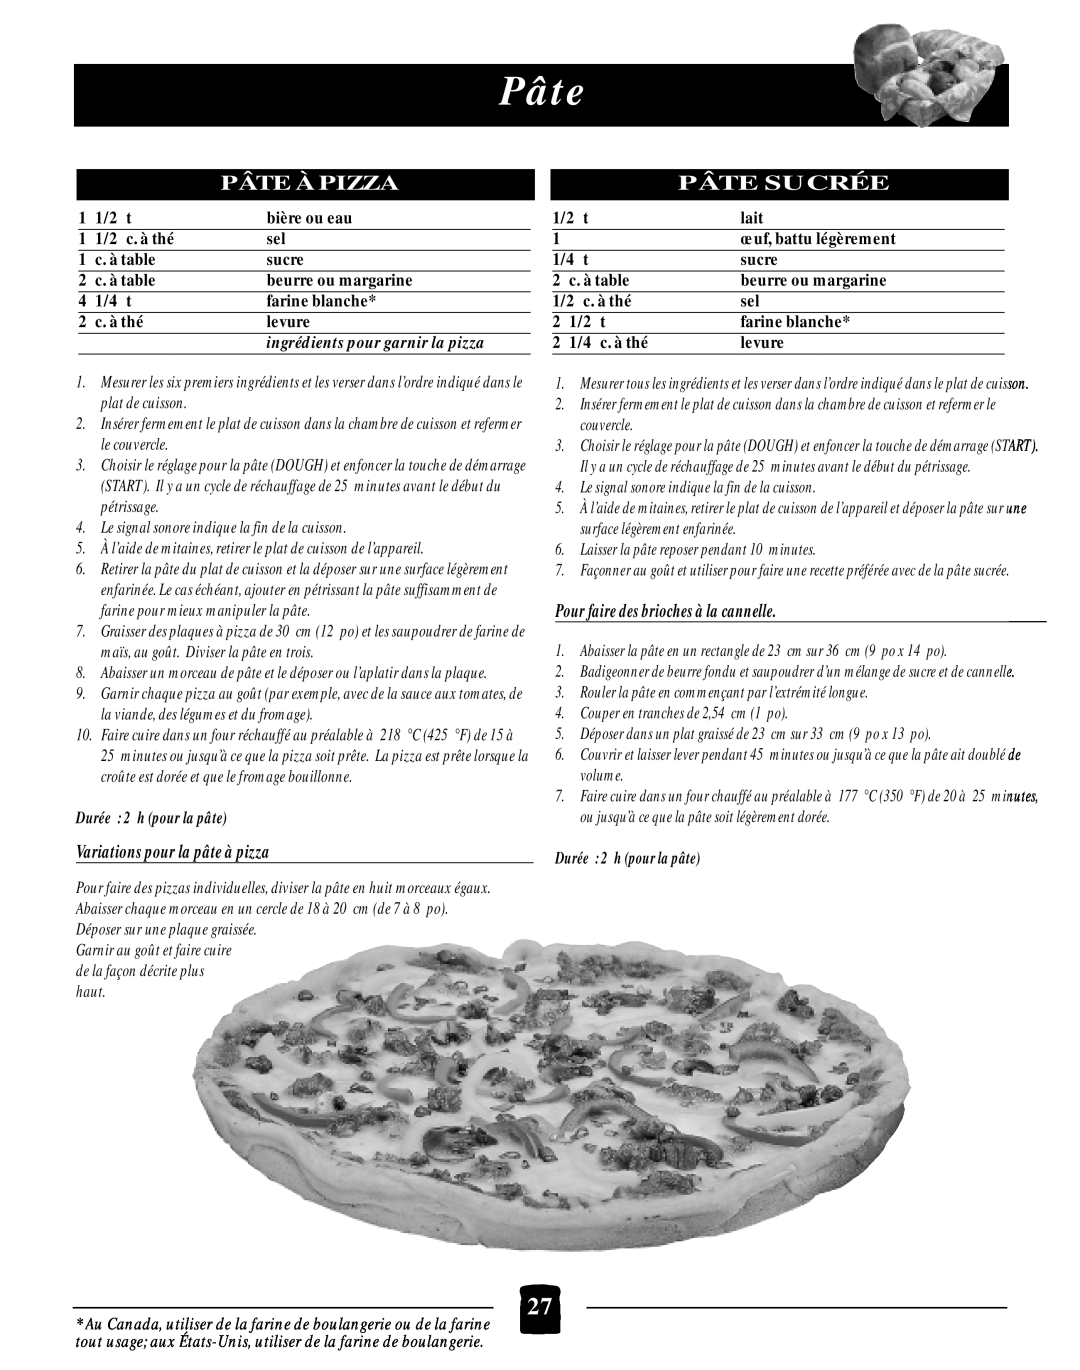 Black & Decker B2005 manual Pâte À Pizza, Pâte Sucrée, ingrédients pour garnir la pizza, Durée 2 h pour la pâte 